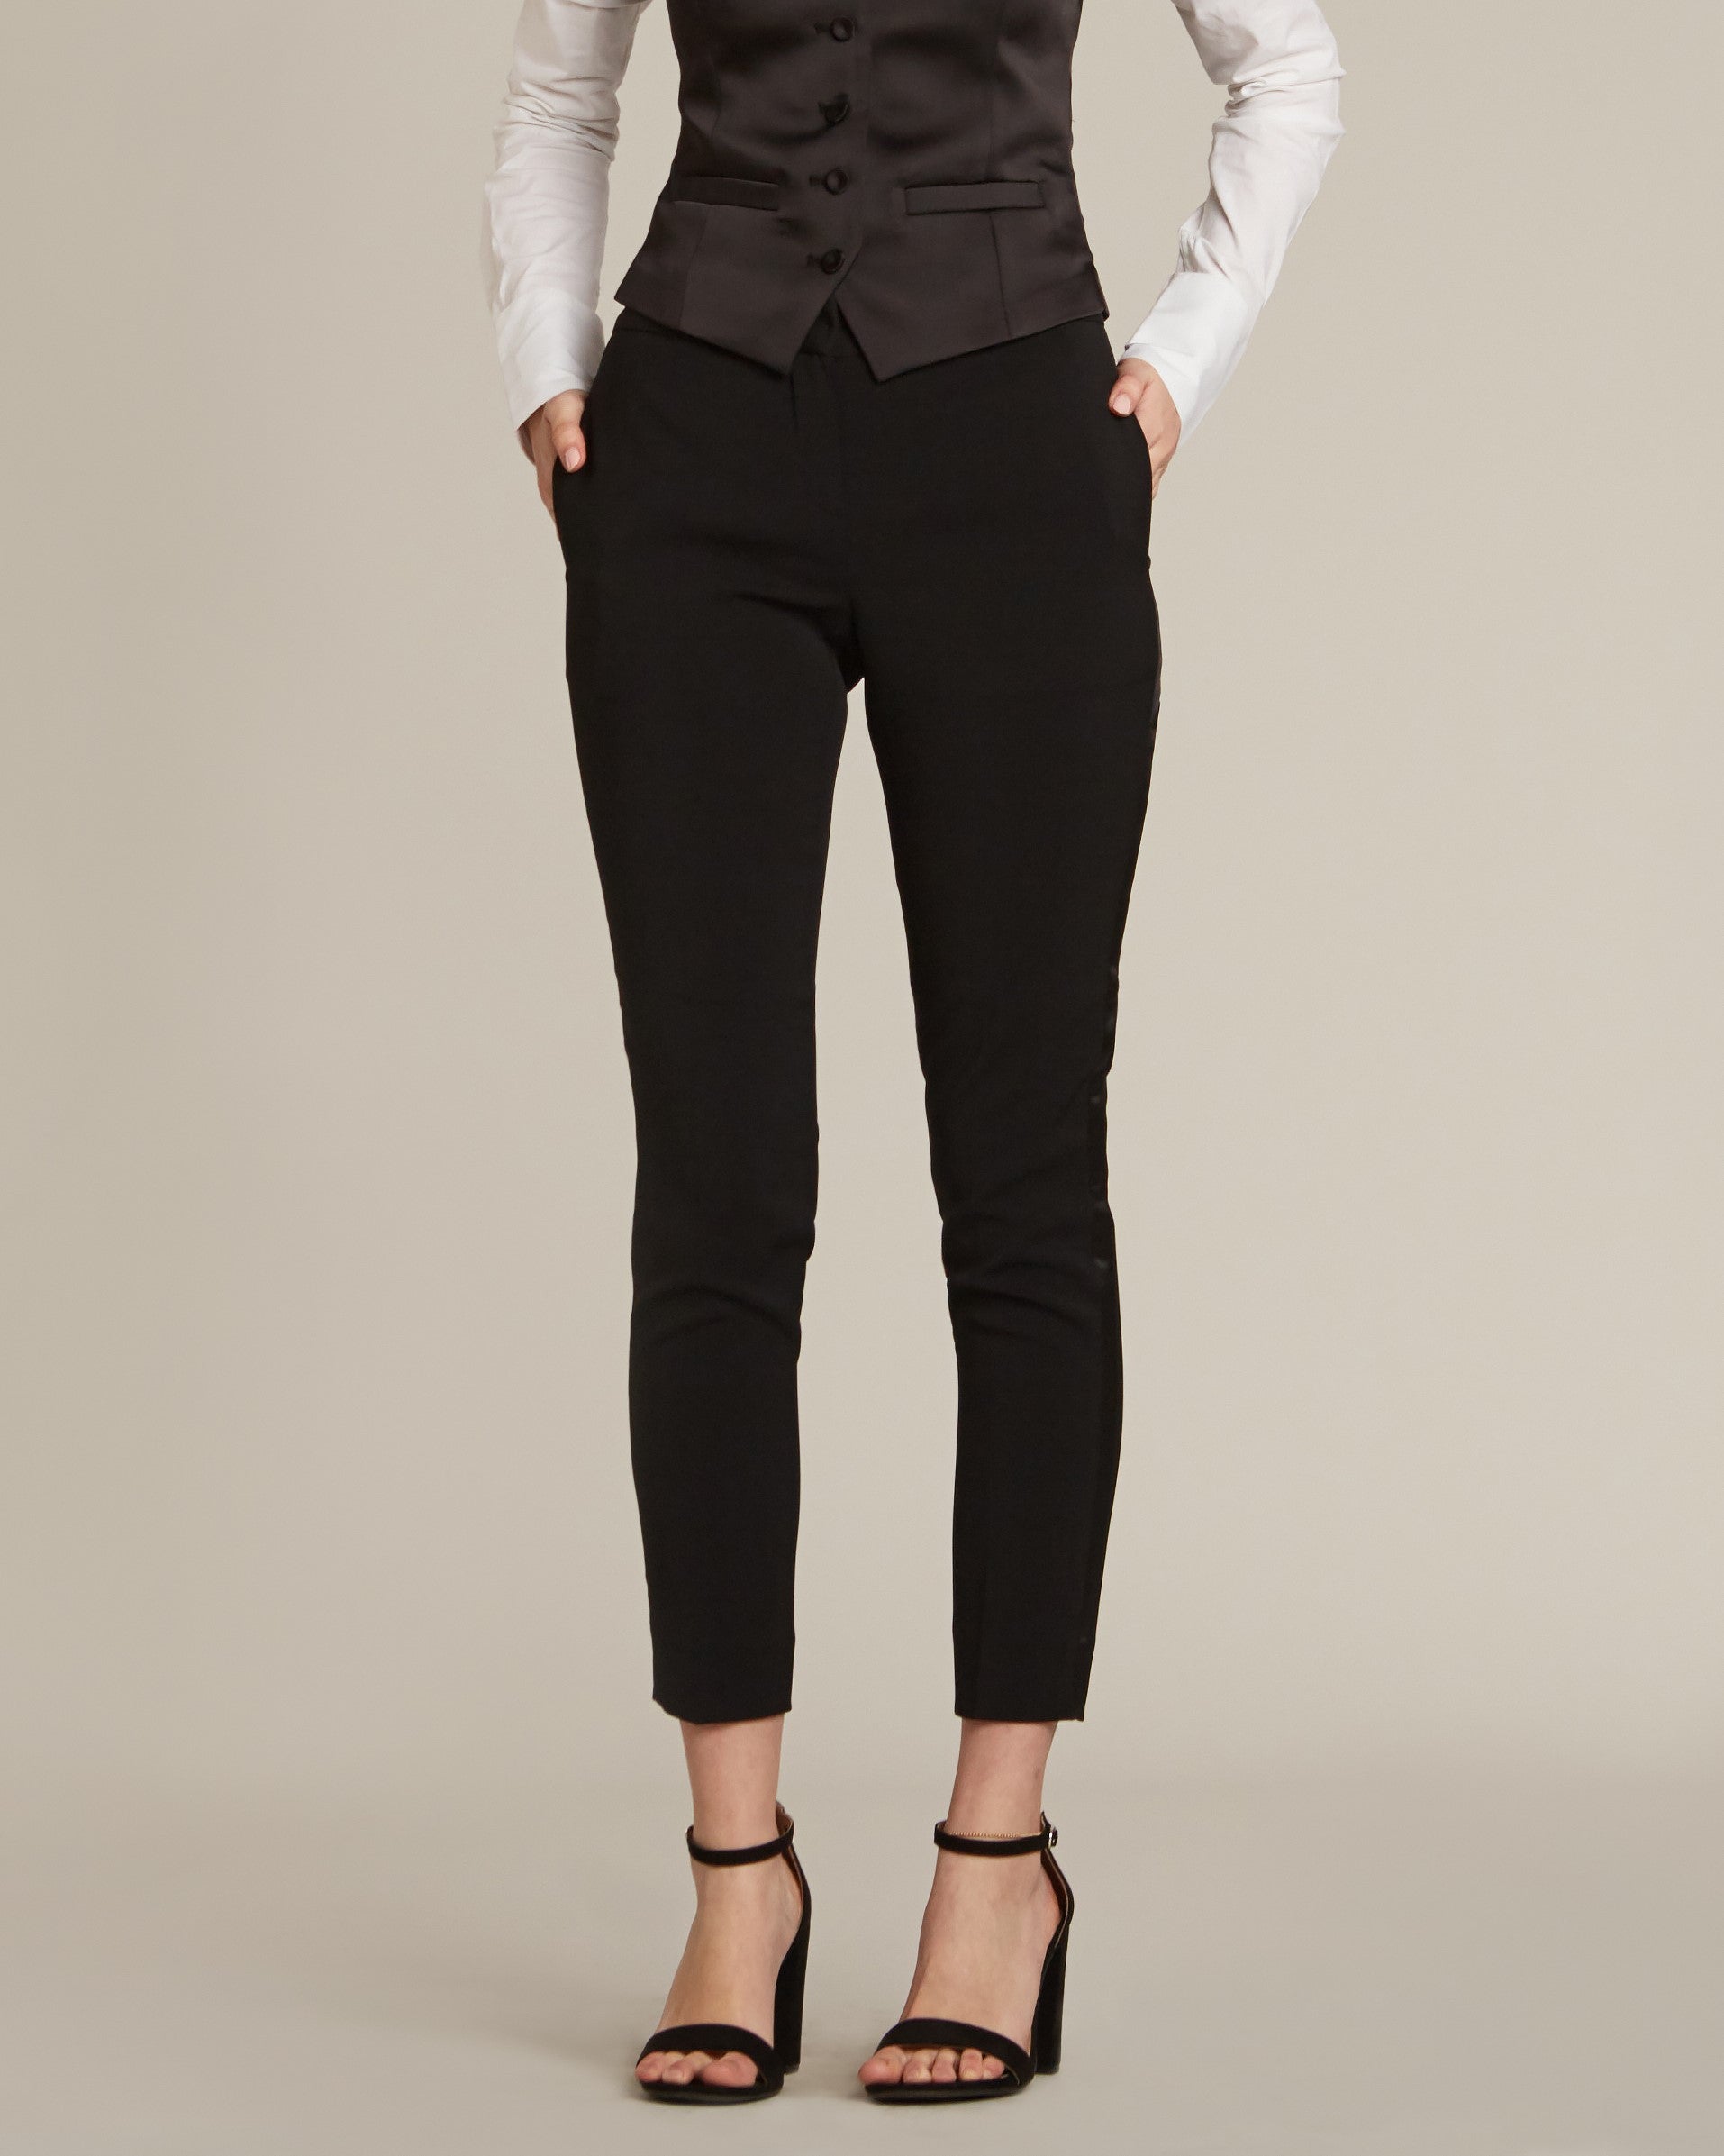 BKT50 Tuxedo Trouser in Super 120s Twill - Black with Grosgrain Stripe –  Brooklyn Tailors